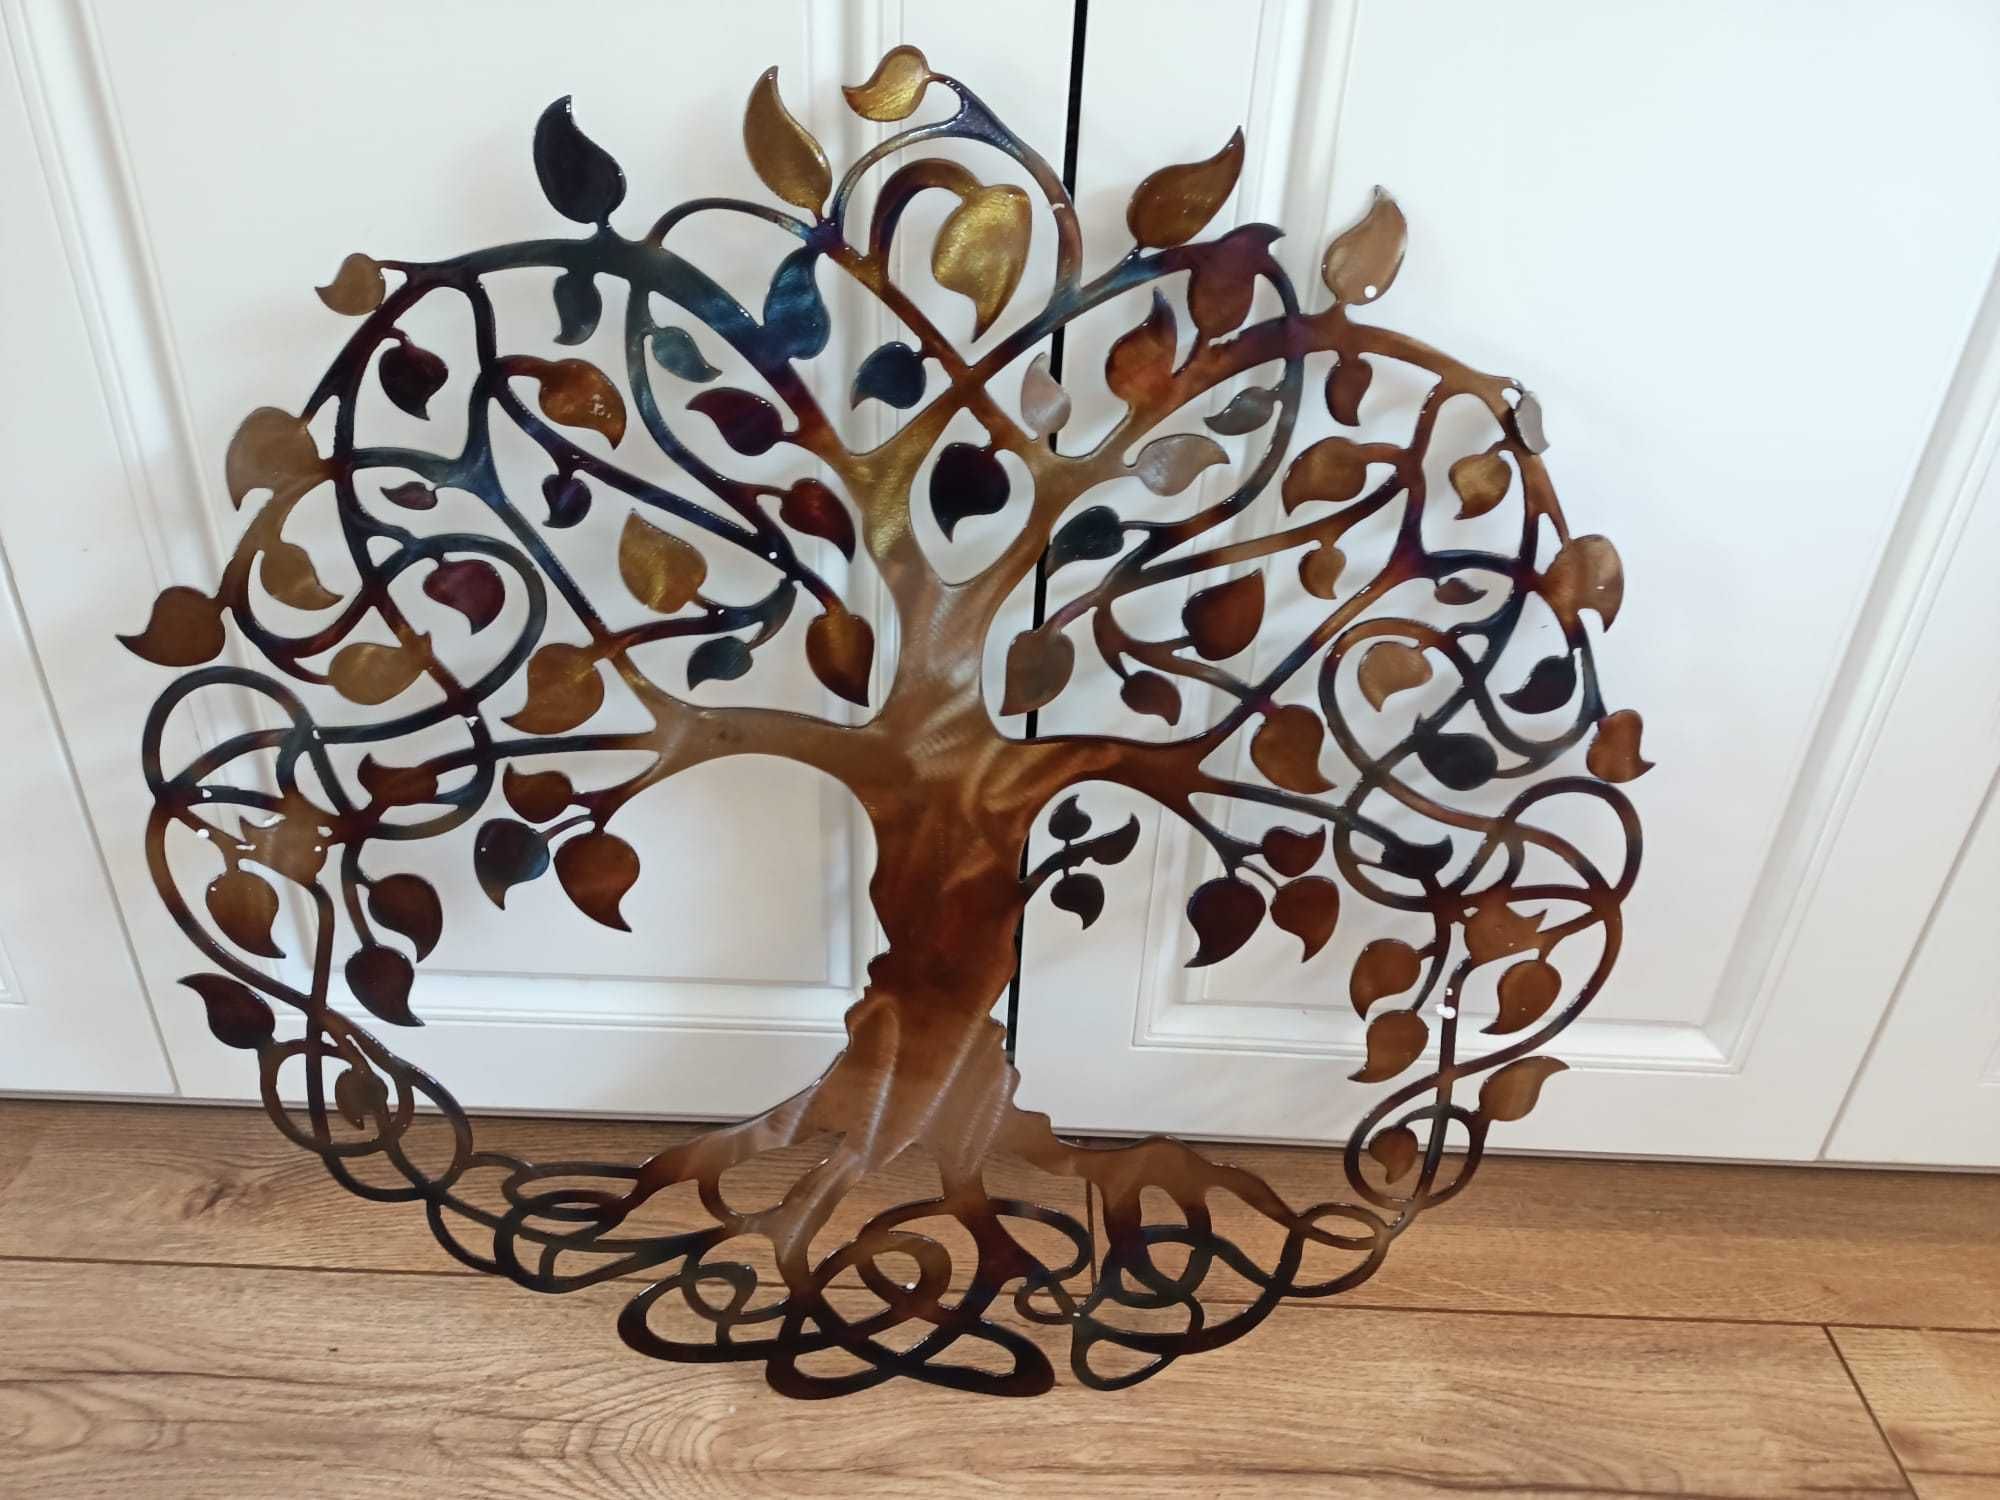 Drzewo życia, celtycki design dekoracja ścienna nowa